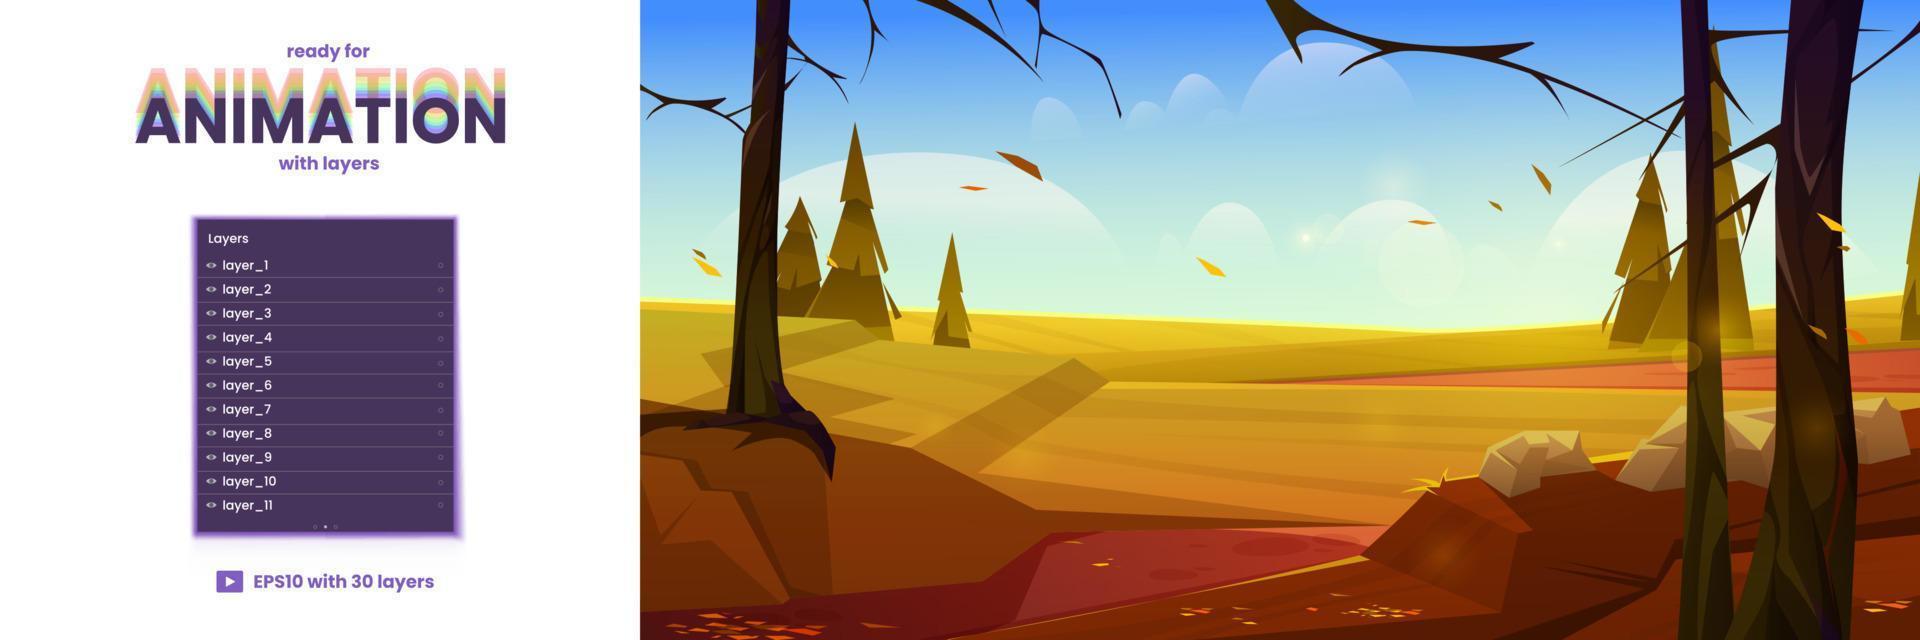 camadas de animação de paisagem de natureza de outono dos desenhos animados vetor